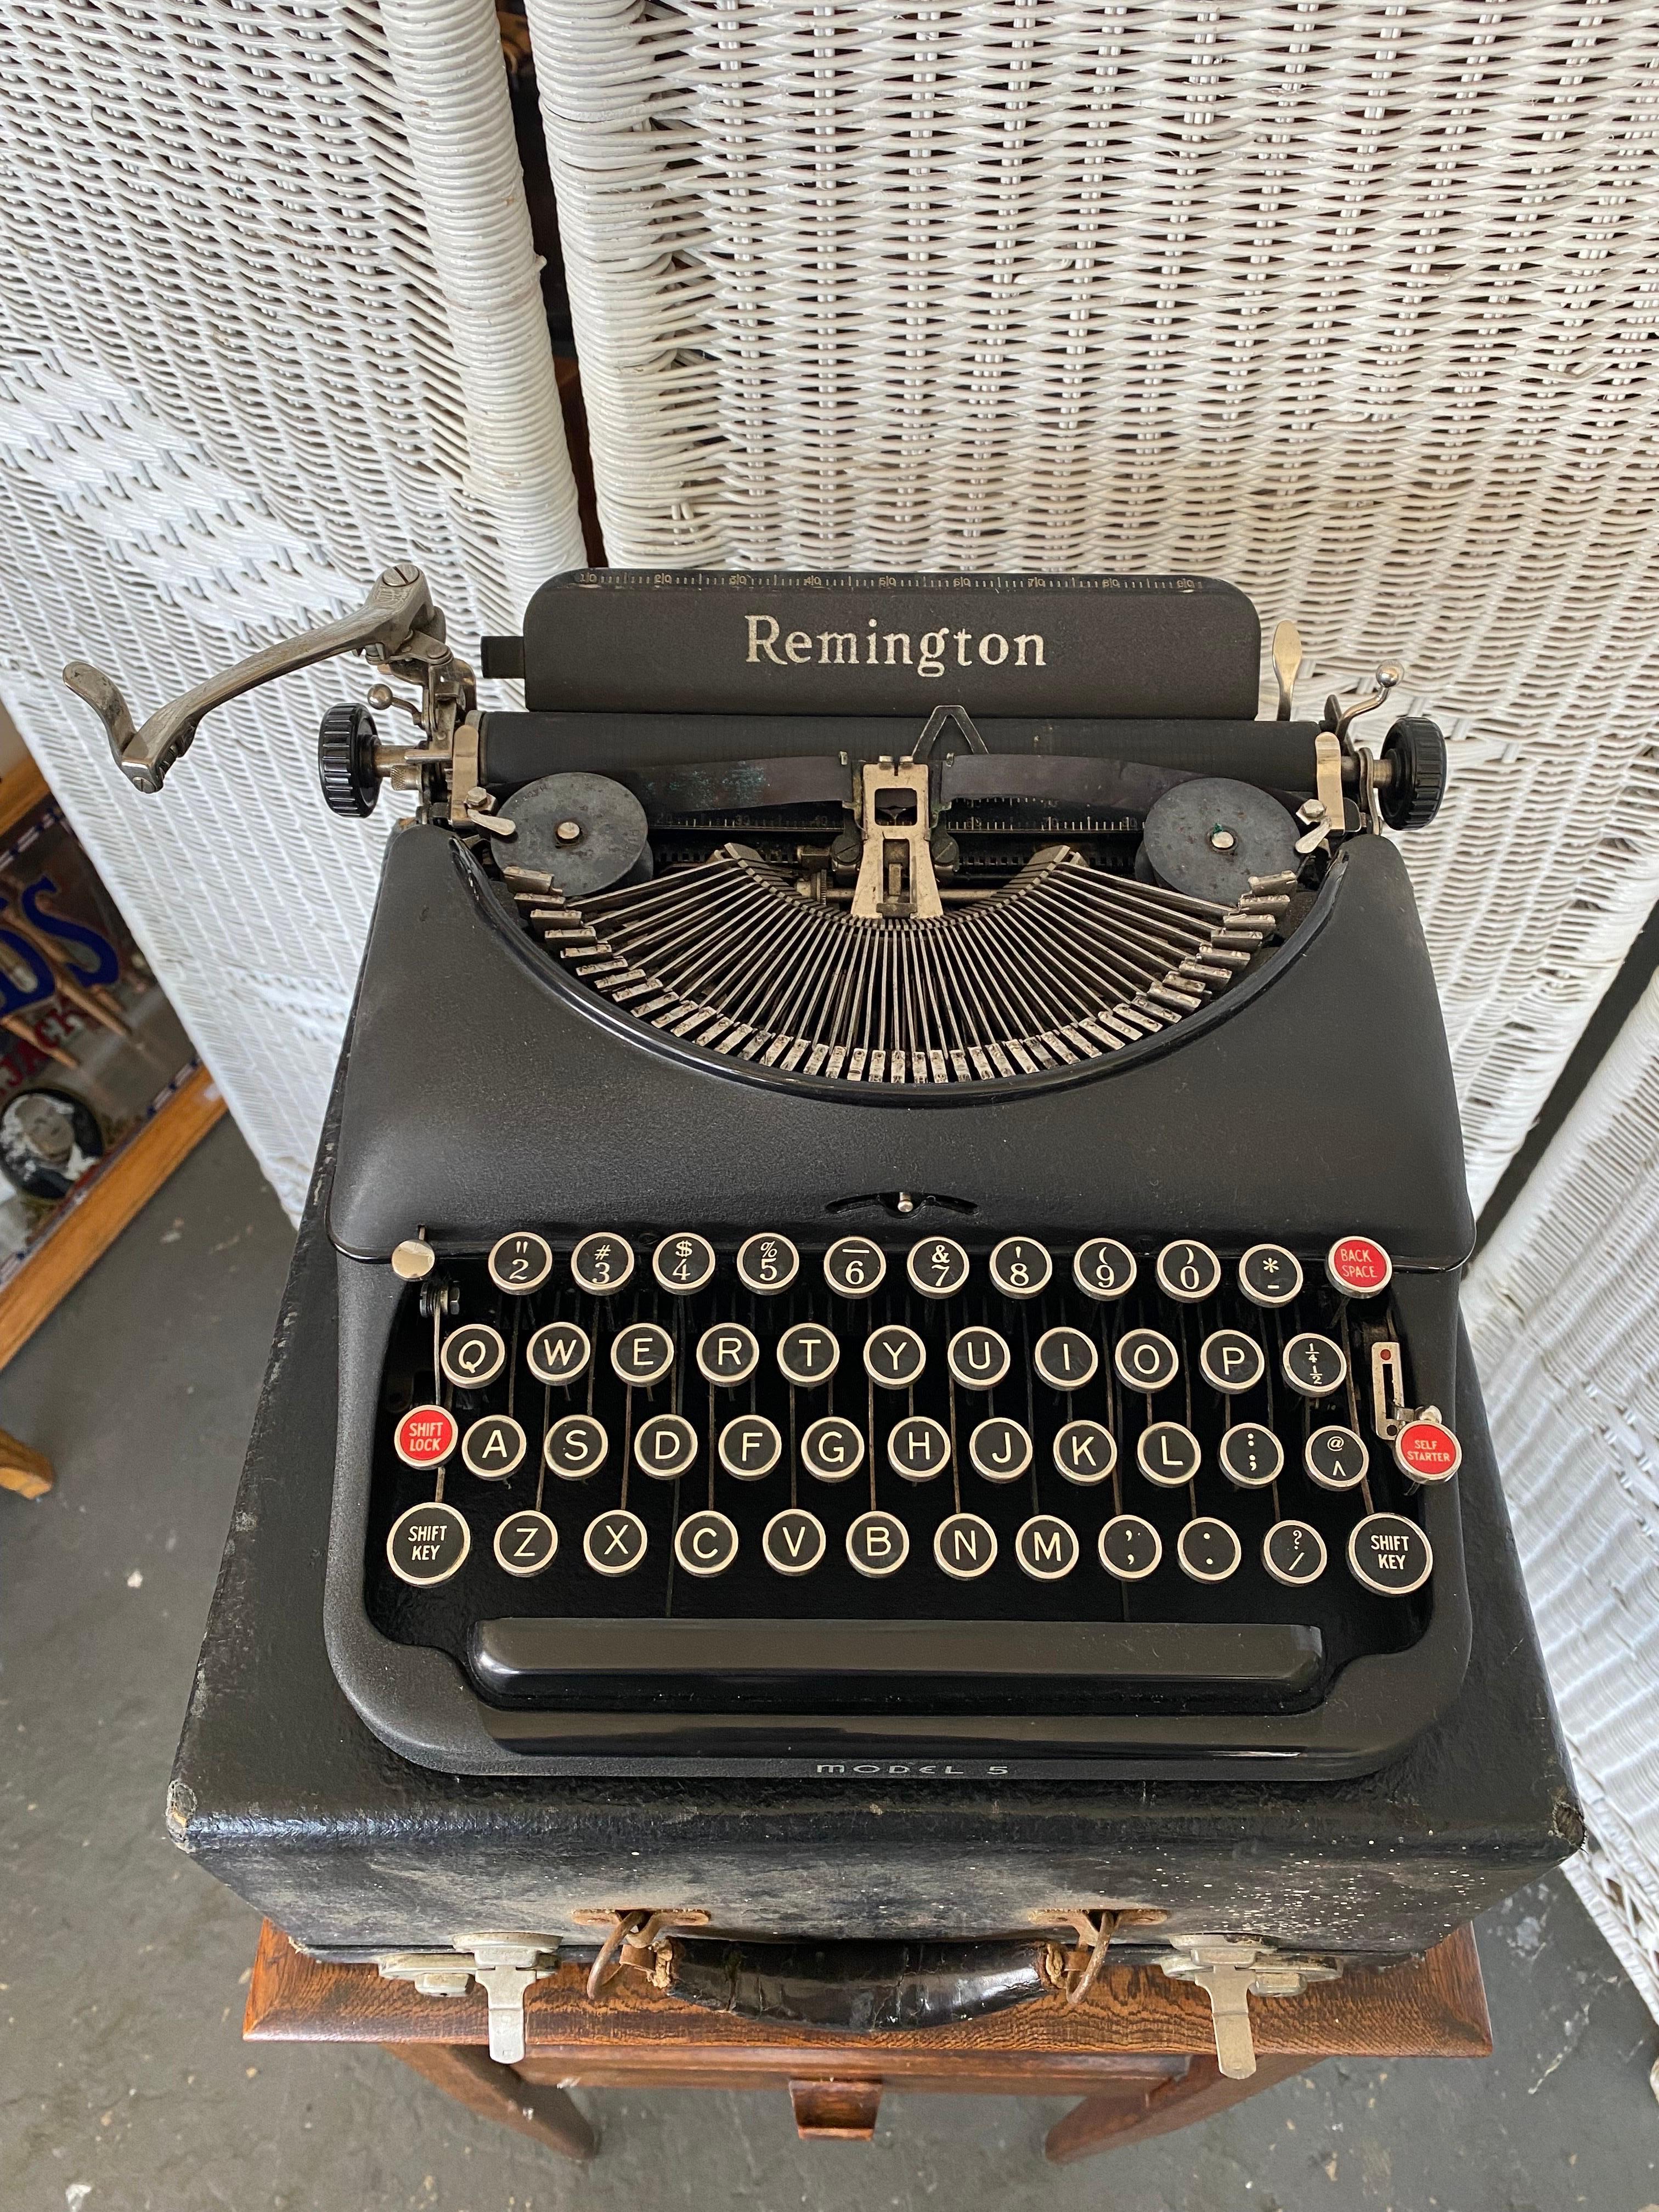 Industriel 1940s Remington Model 5 Portable Black Typewriter with Case (Machine à écrire portable noire avec étui) 